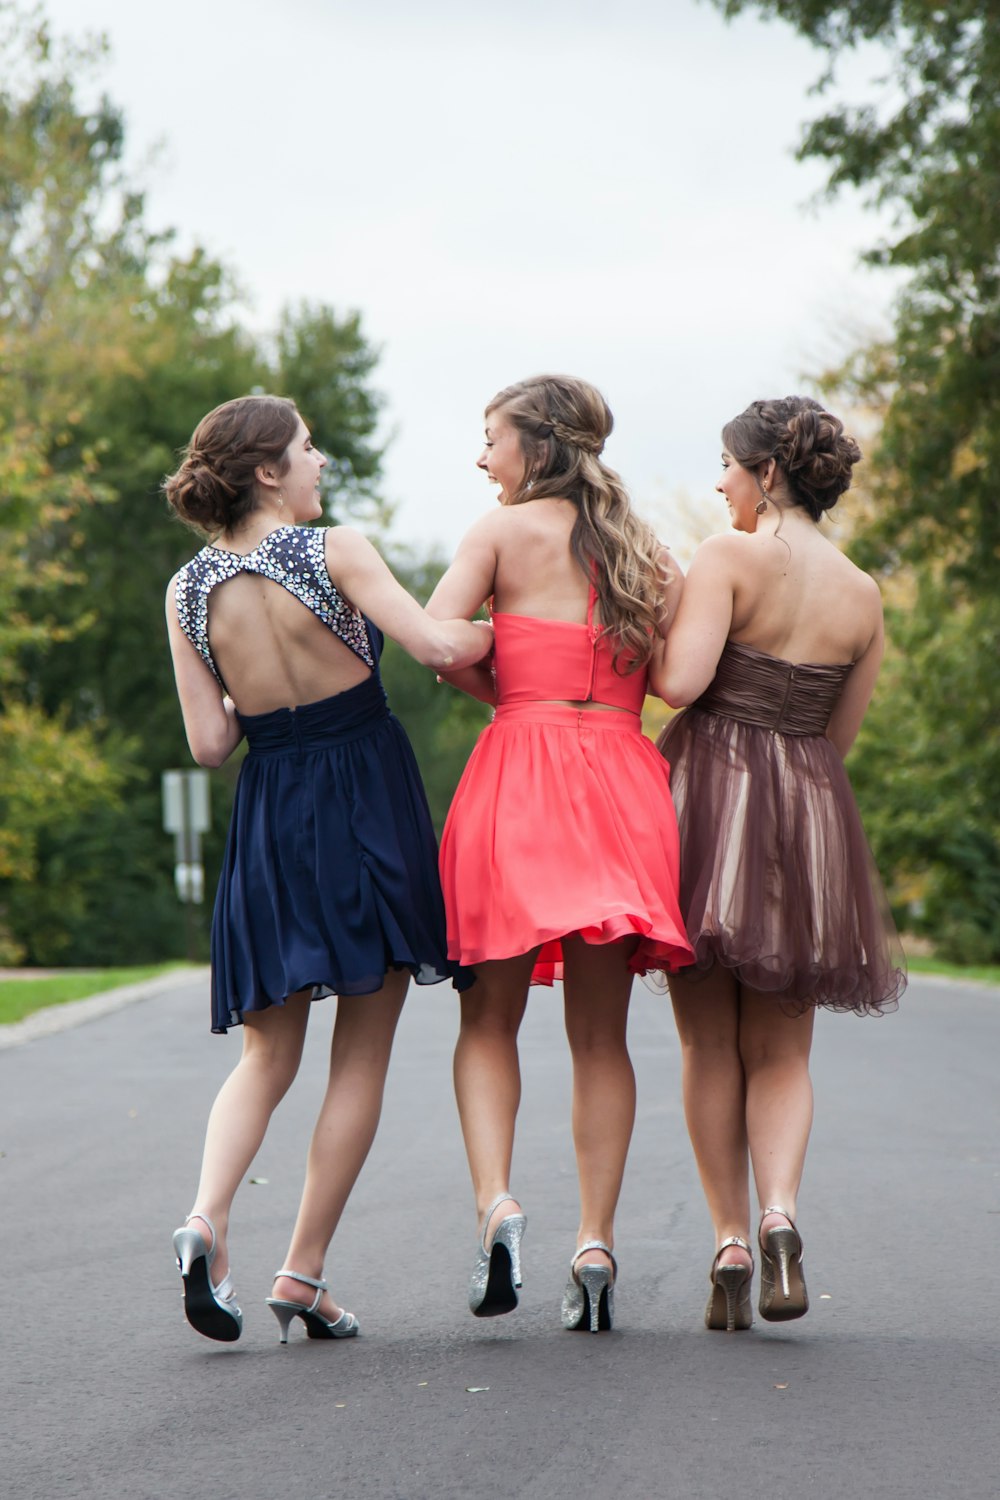 빨간색, 갈색, 파란색 드레스를 입은 세 명의 여성이 낮에 콘크리트 도로를 걷고 있습니다.